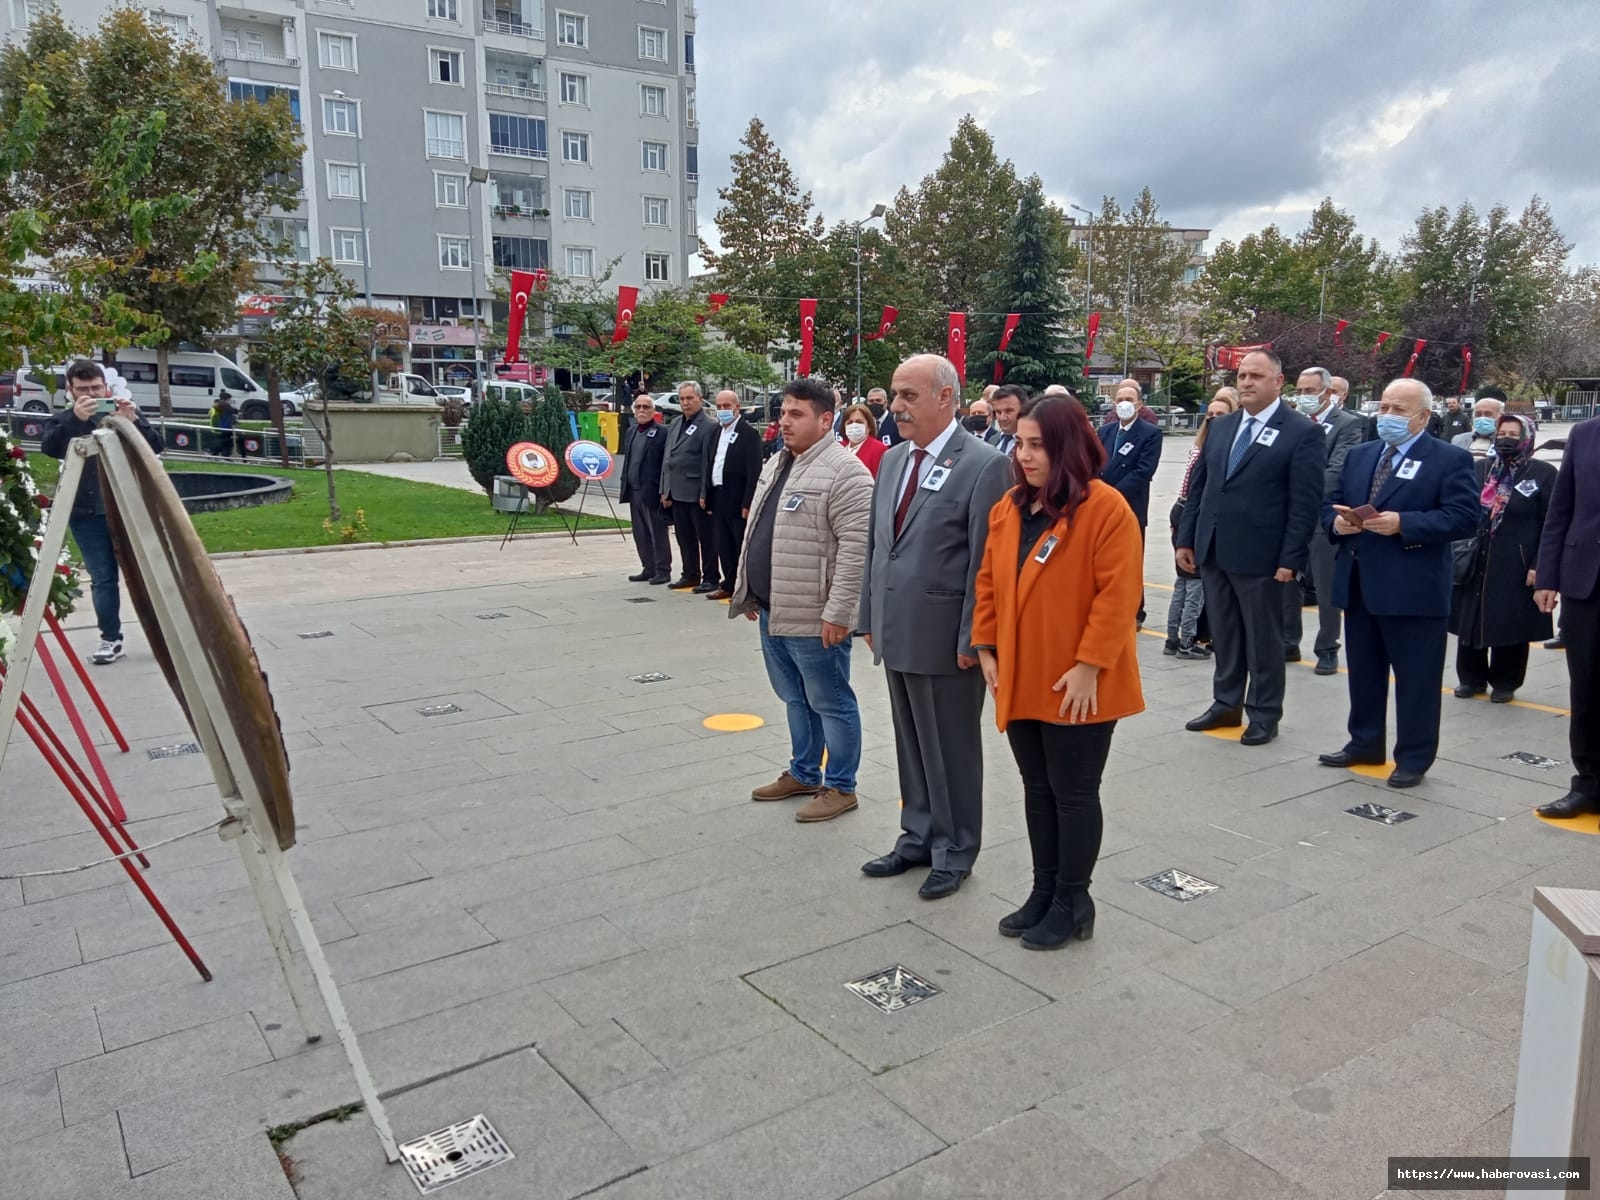 CHP Bafra İlçe başkanlığı çelenk sunma töreni düzenledi